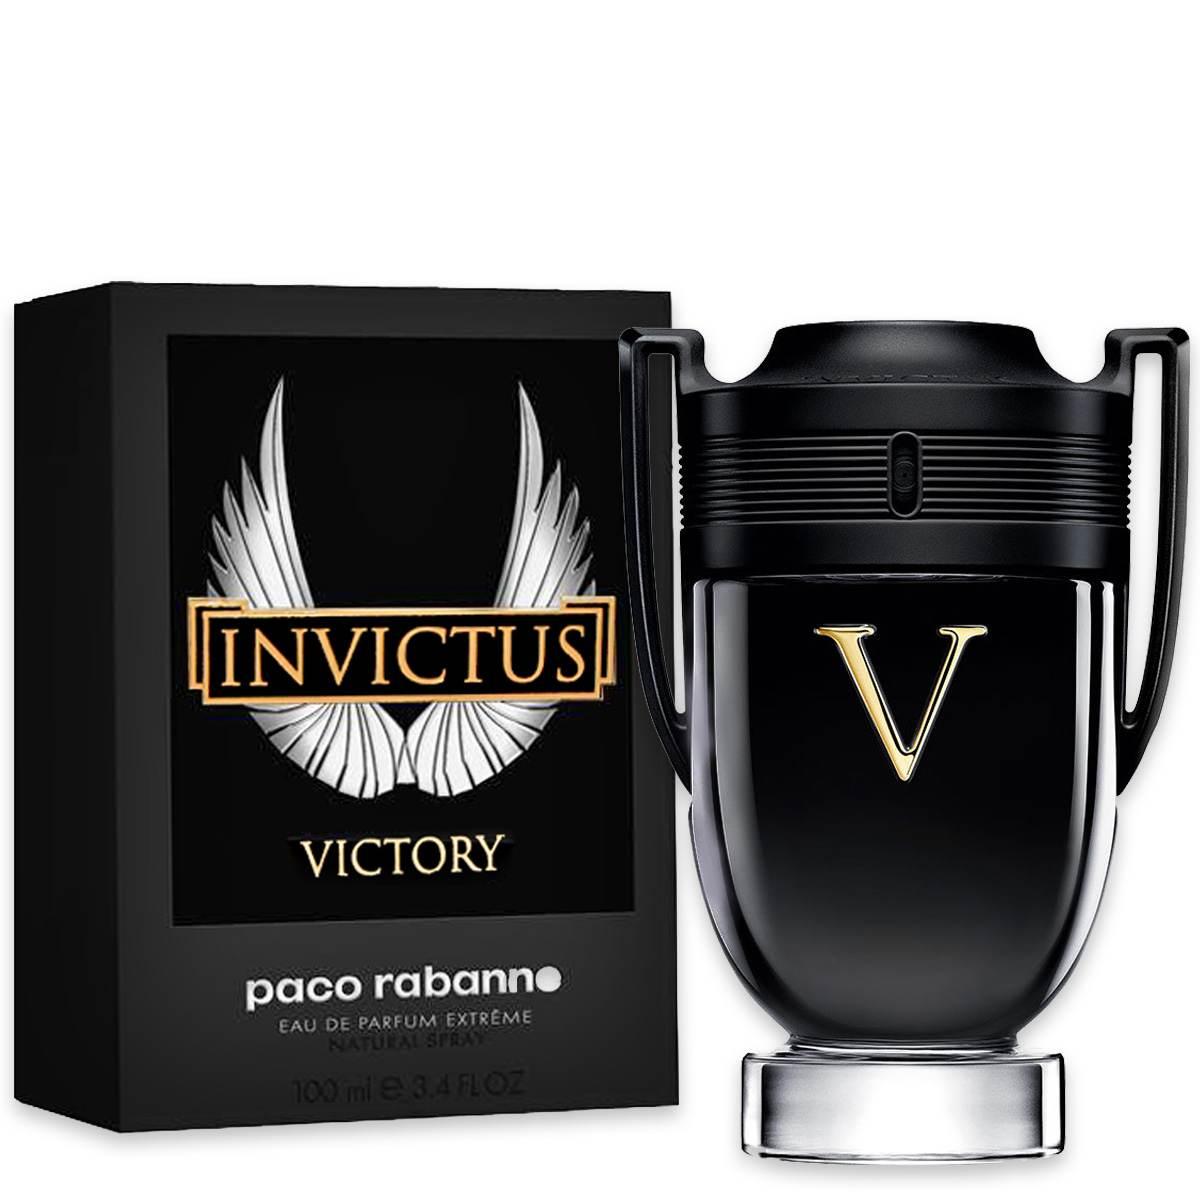 100 ml Paco Rabanne - Invictus Victory - Eau de Parfum Extrême pour homme